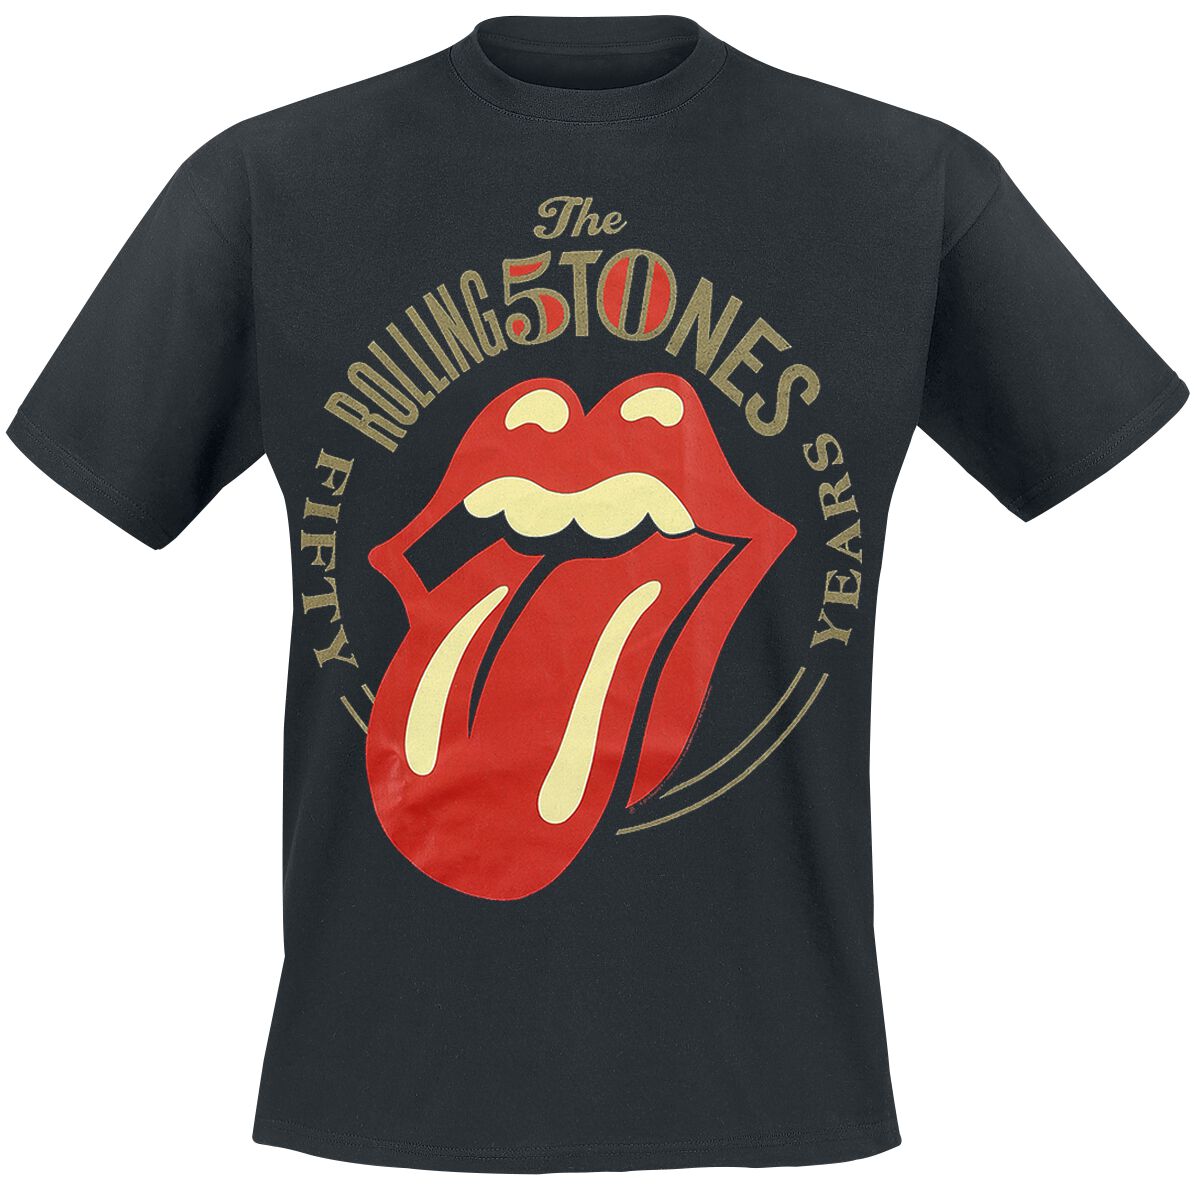 The Rolling Stones T-Shirt - 50 Years - M bis 3XL - für Männer - Größe M - schwarz  - Lizenziertes Merchandise!